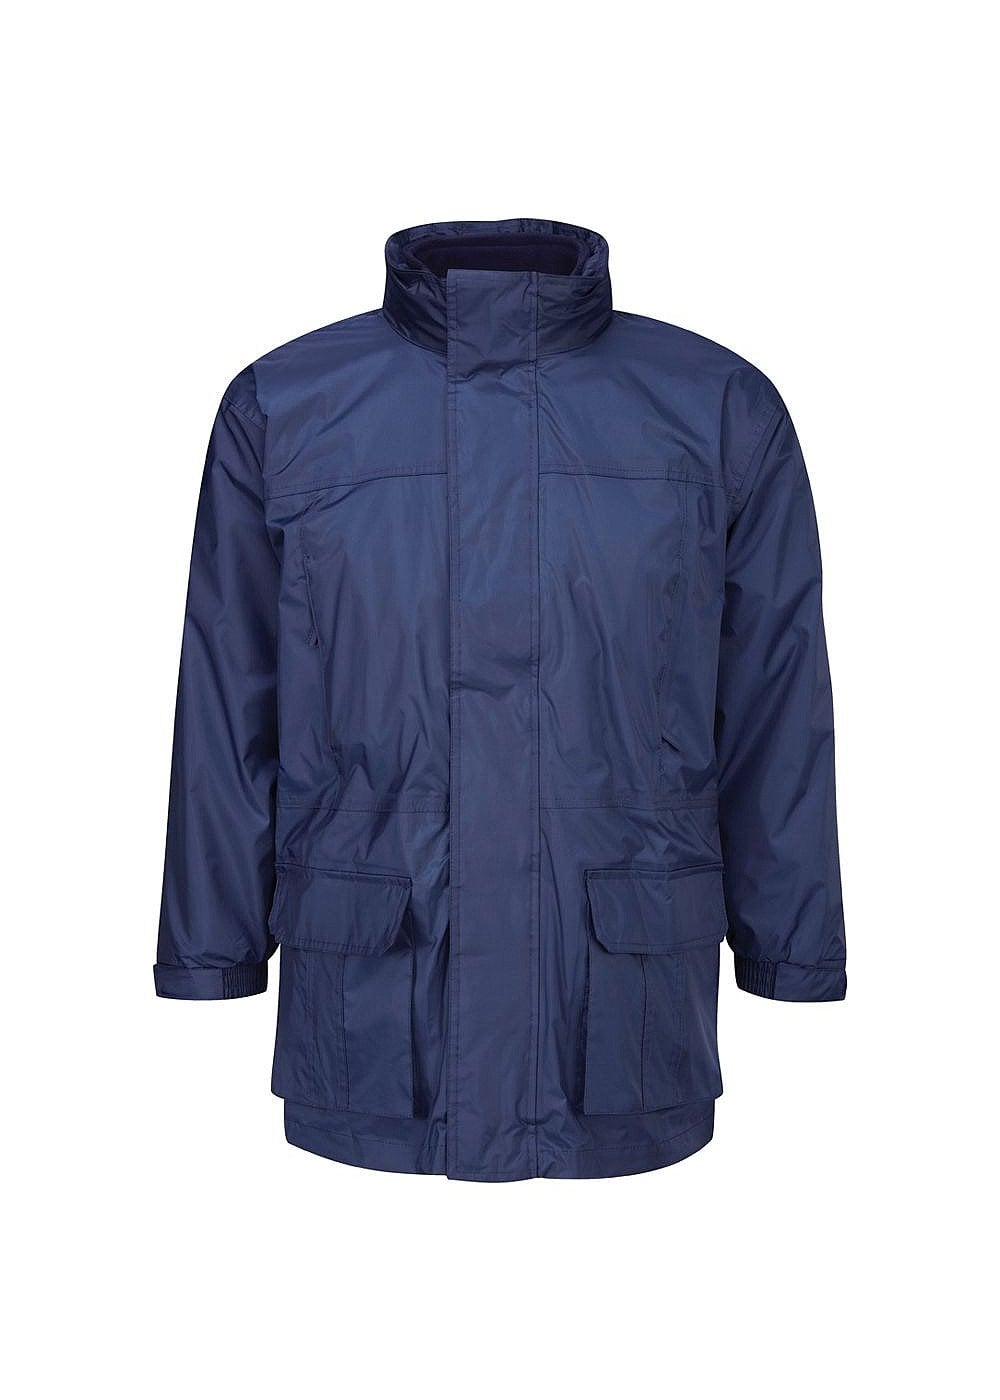 15 x Banner Keswick 3 in 1 Zip In Fleece Jacket Navy Blue Waterproof Coat School etc